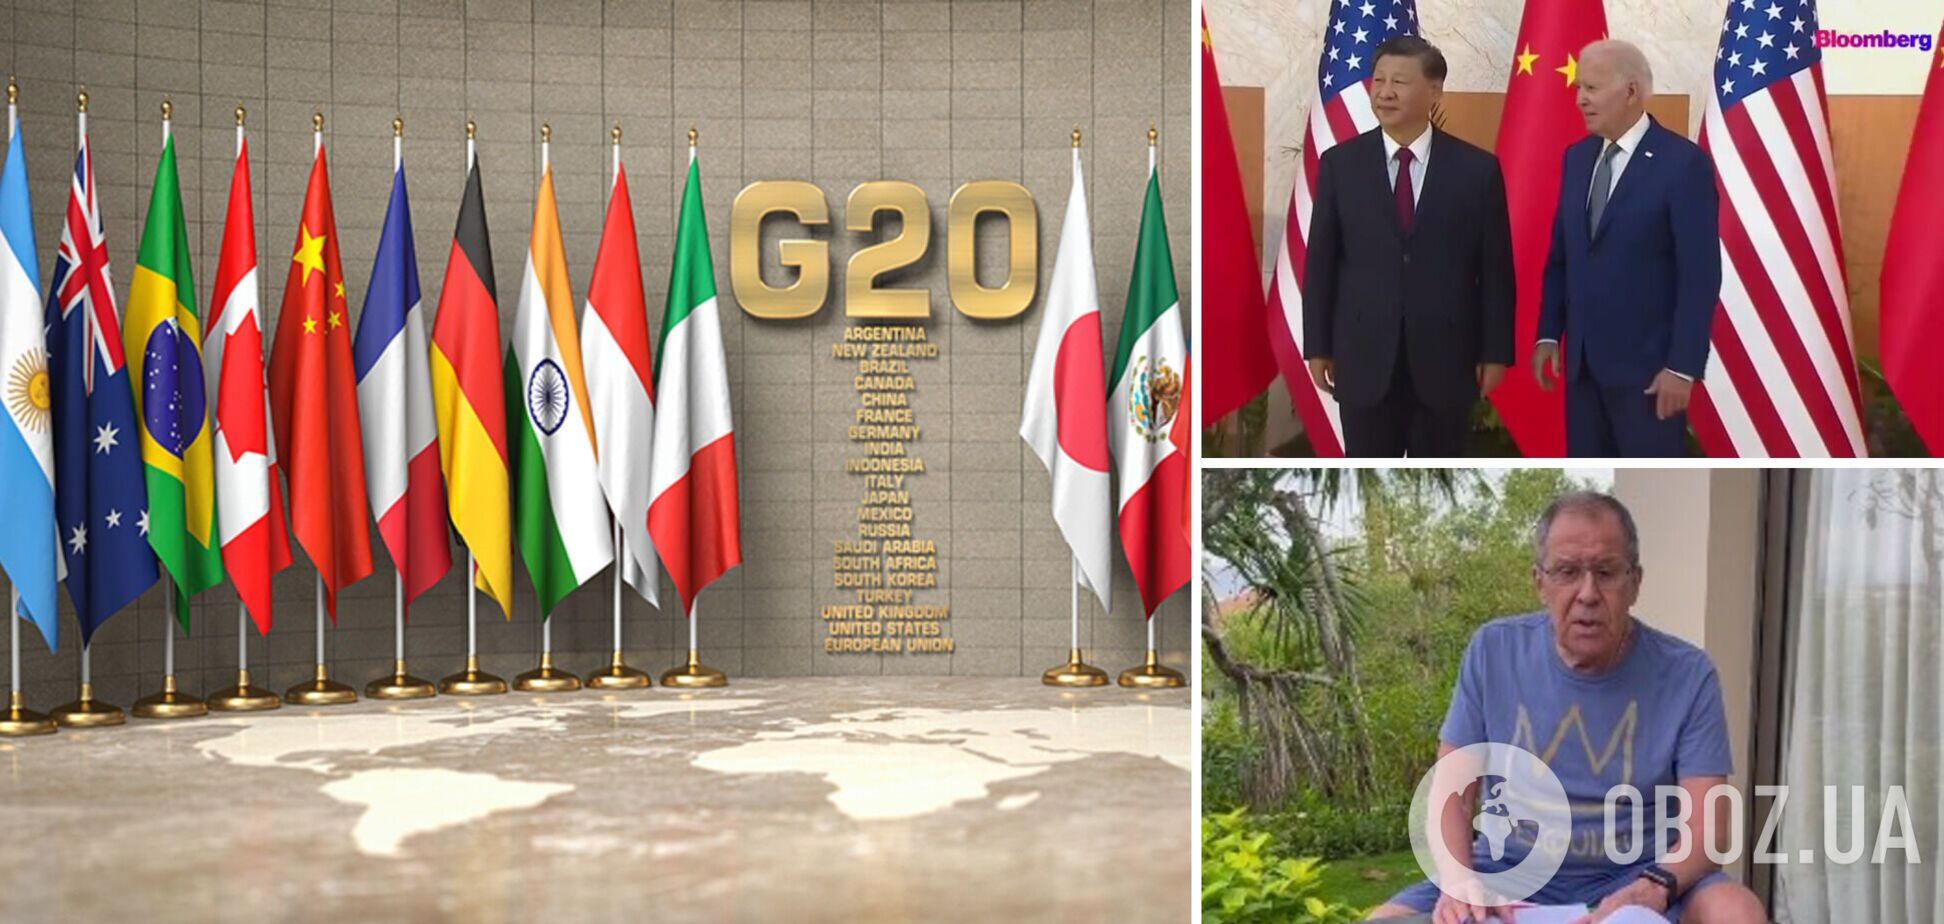  OBOZREVATEL собрал главные новости в ожидании саммита G20 на Бали